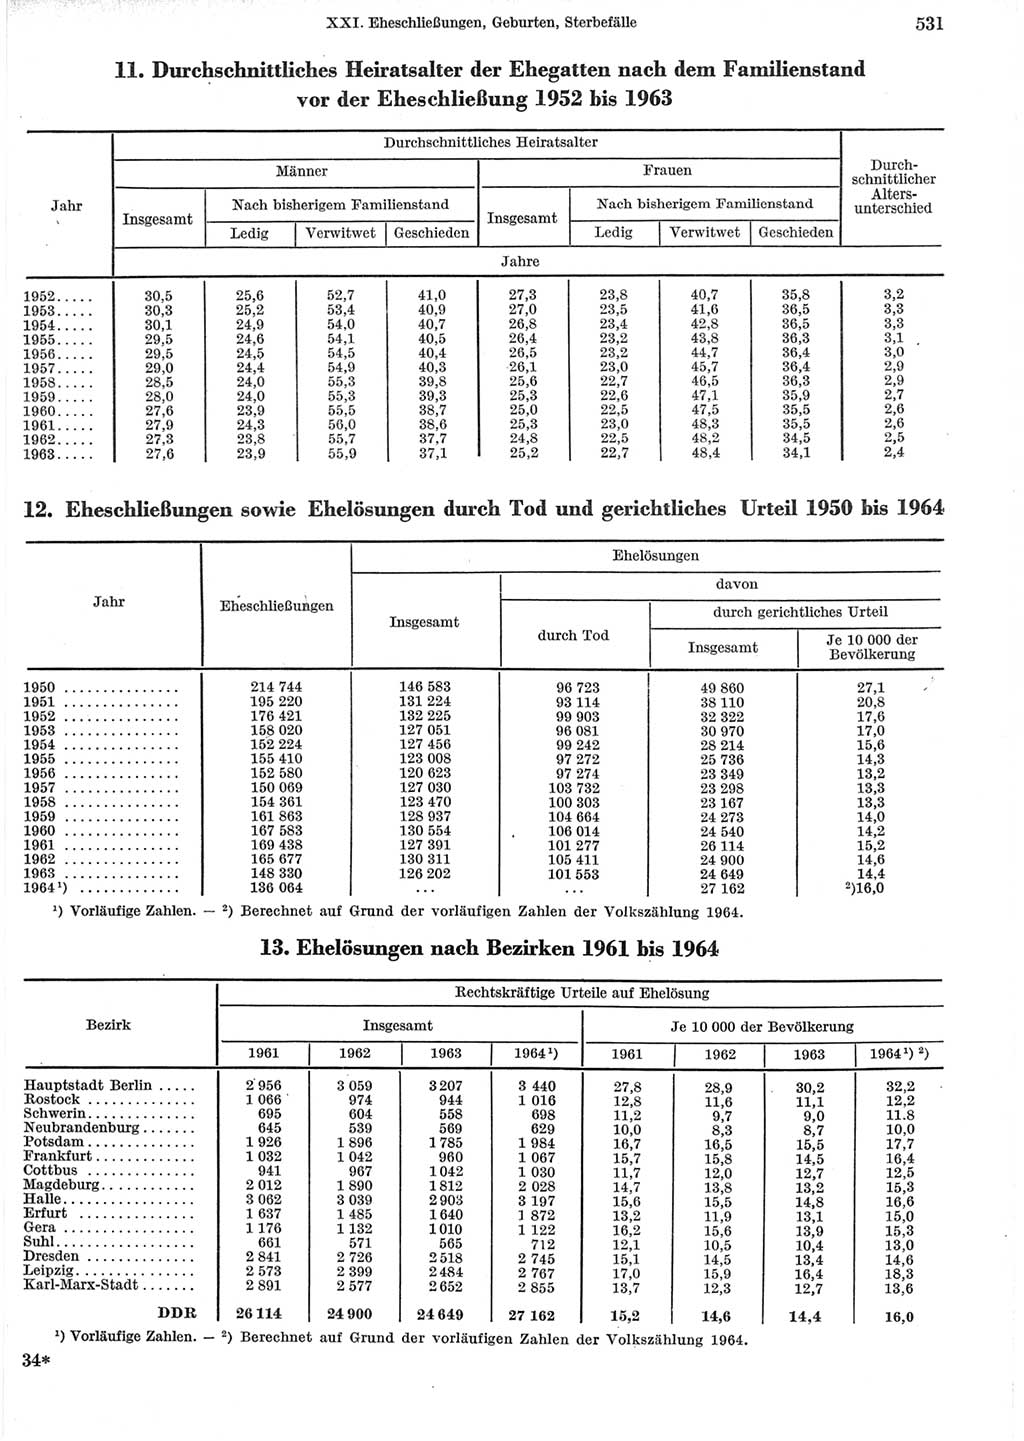 Statistisches Jahrbuch der Deutschen Demokratischen Republik (DDR) 1965, Seite 531 (Stat. Jb. DDR 1965, S. 531)